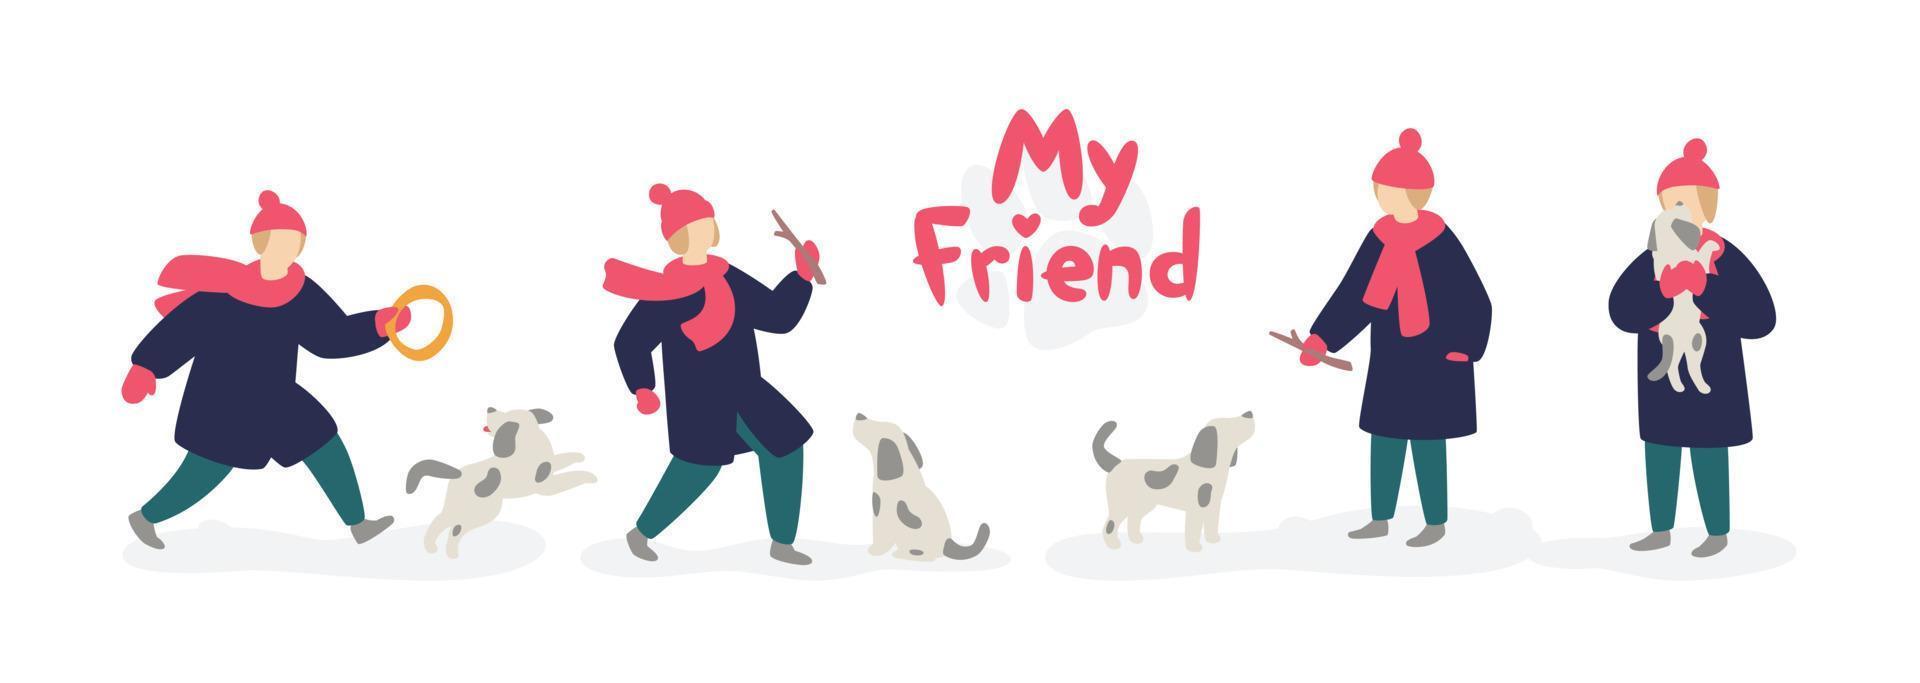 illustratie van een meisje dat met een hond speelt. vector. meisje tiener in een jas en hoed, met een dakloze grijze hond. platte cartoonstijl. het logo van mijn vriend. illustraties voor de opvang van dakloze dieren. vector